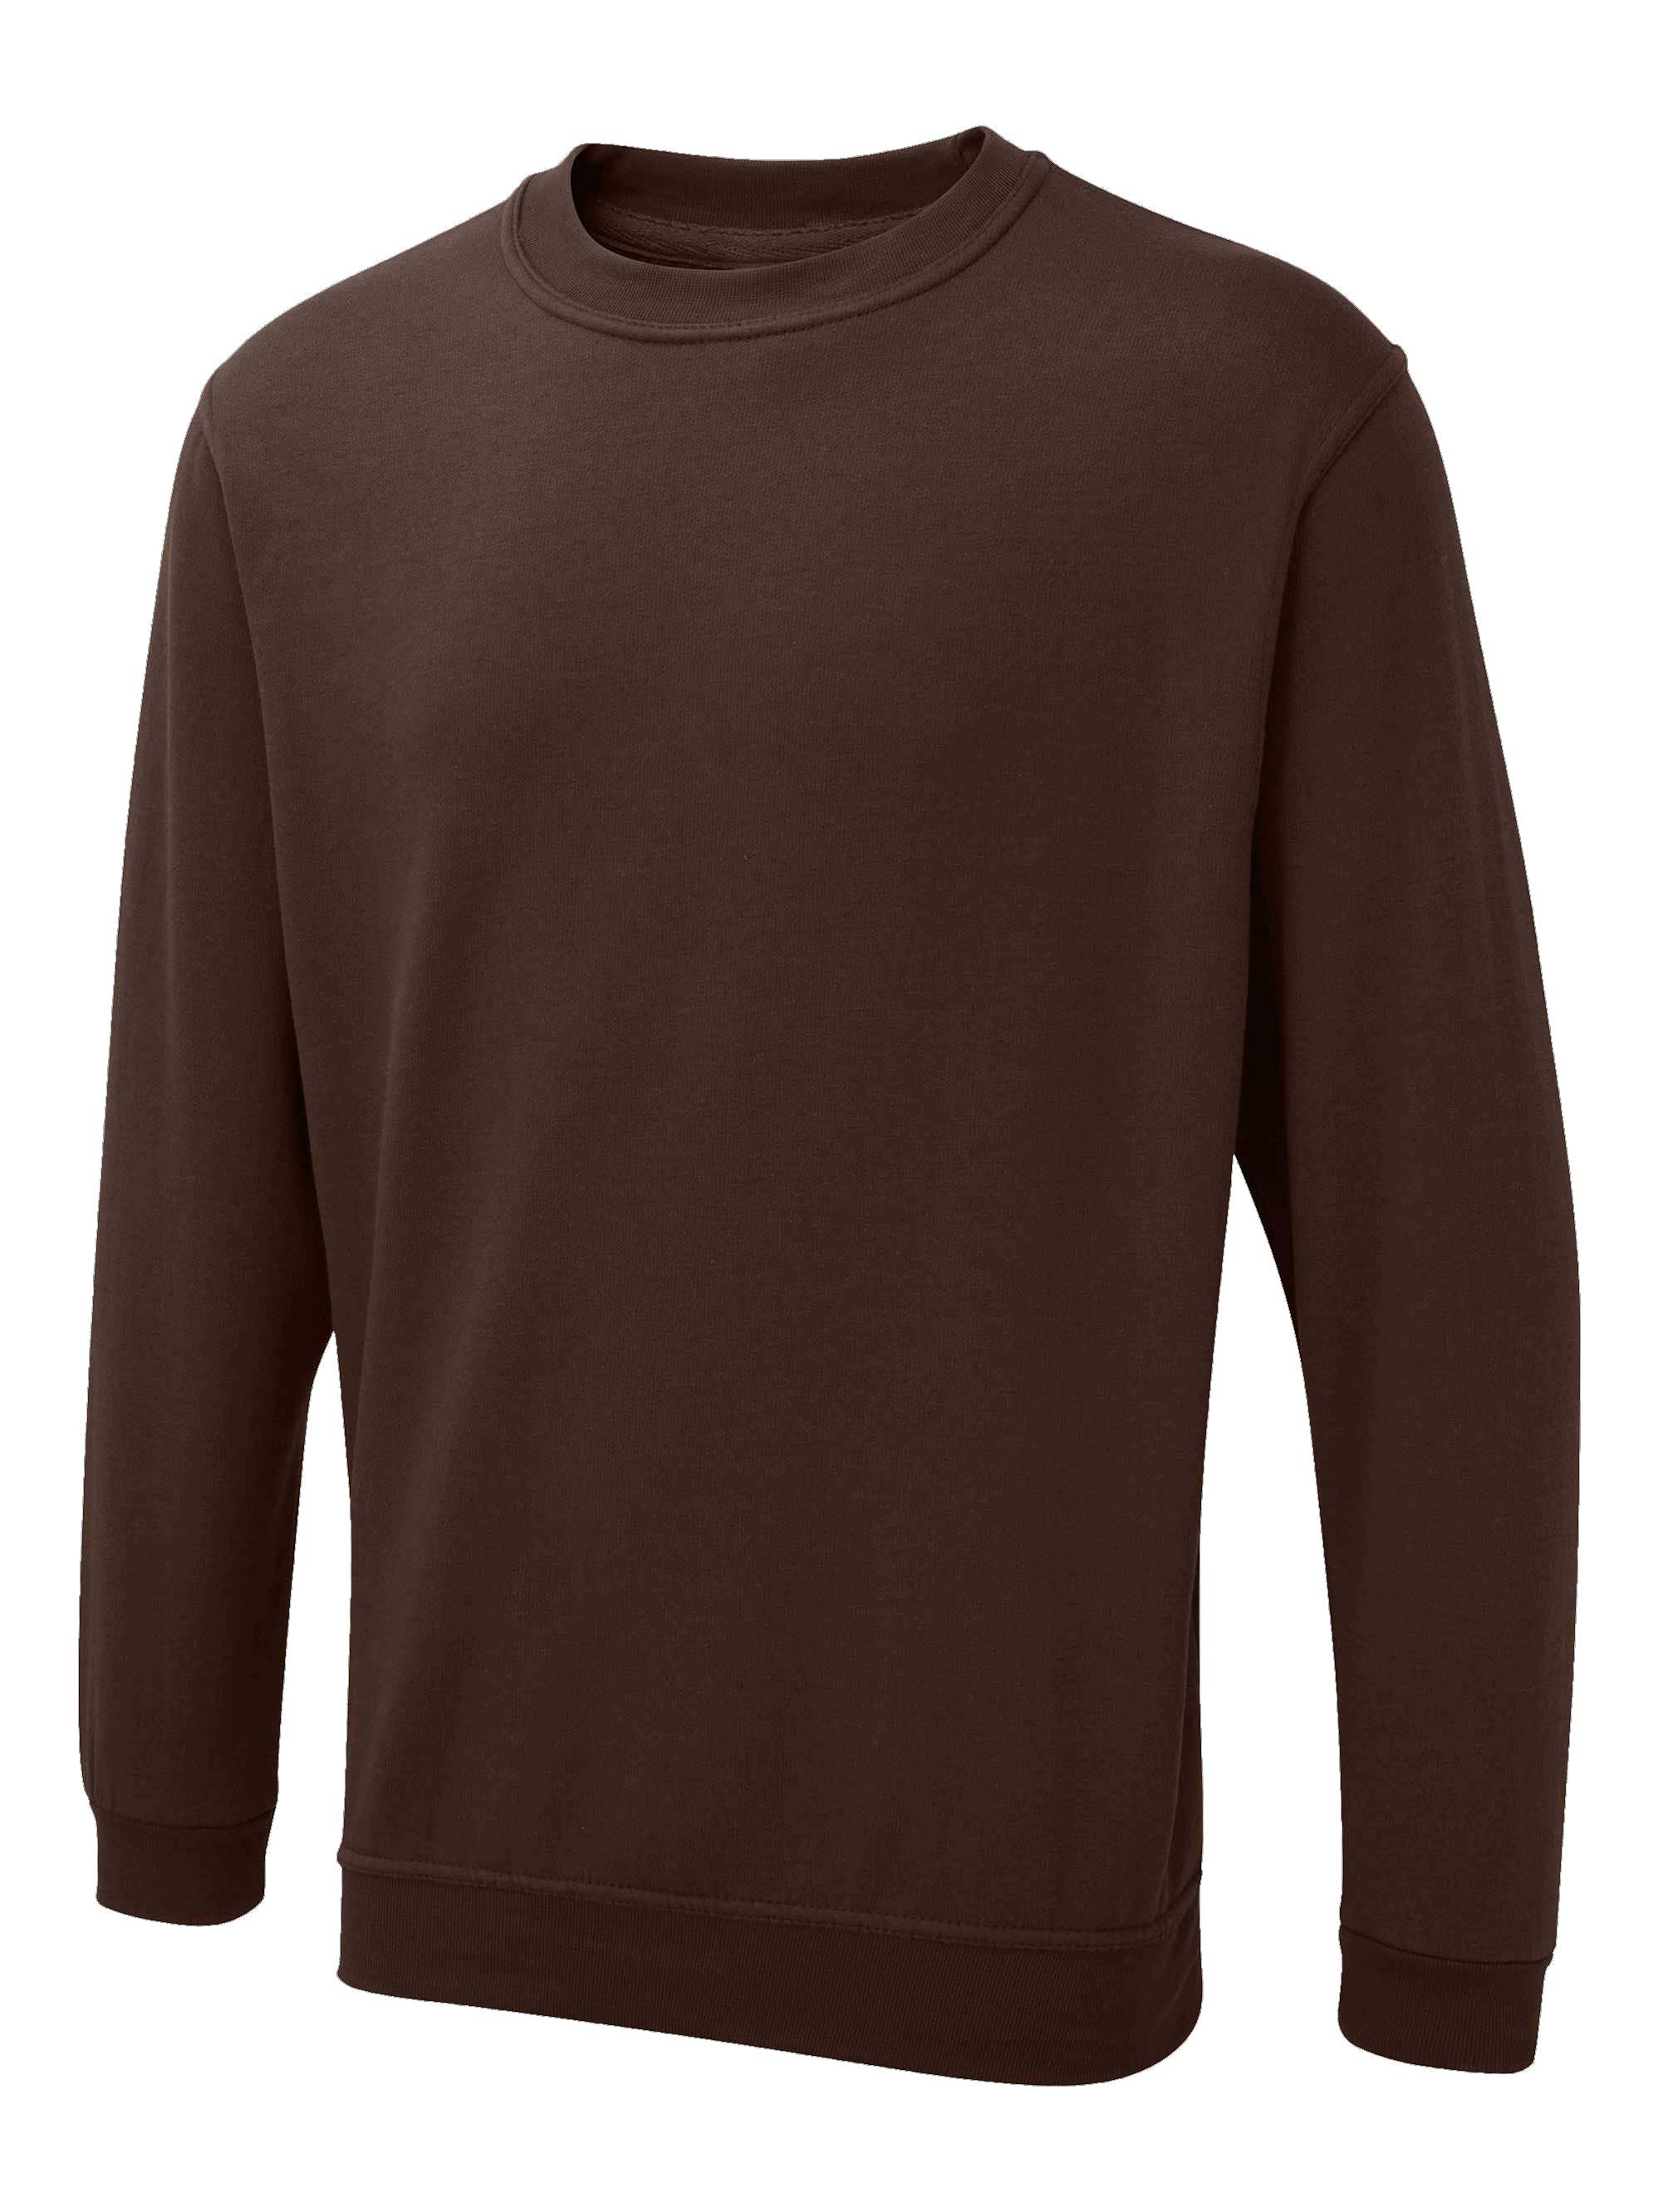 Uneek The UX Sweatshirt - ux3 (Brown)